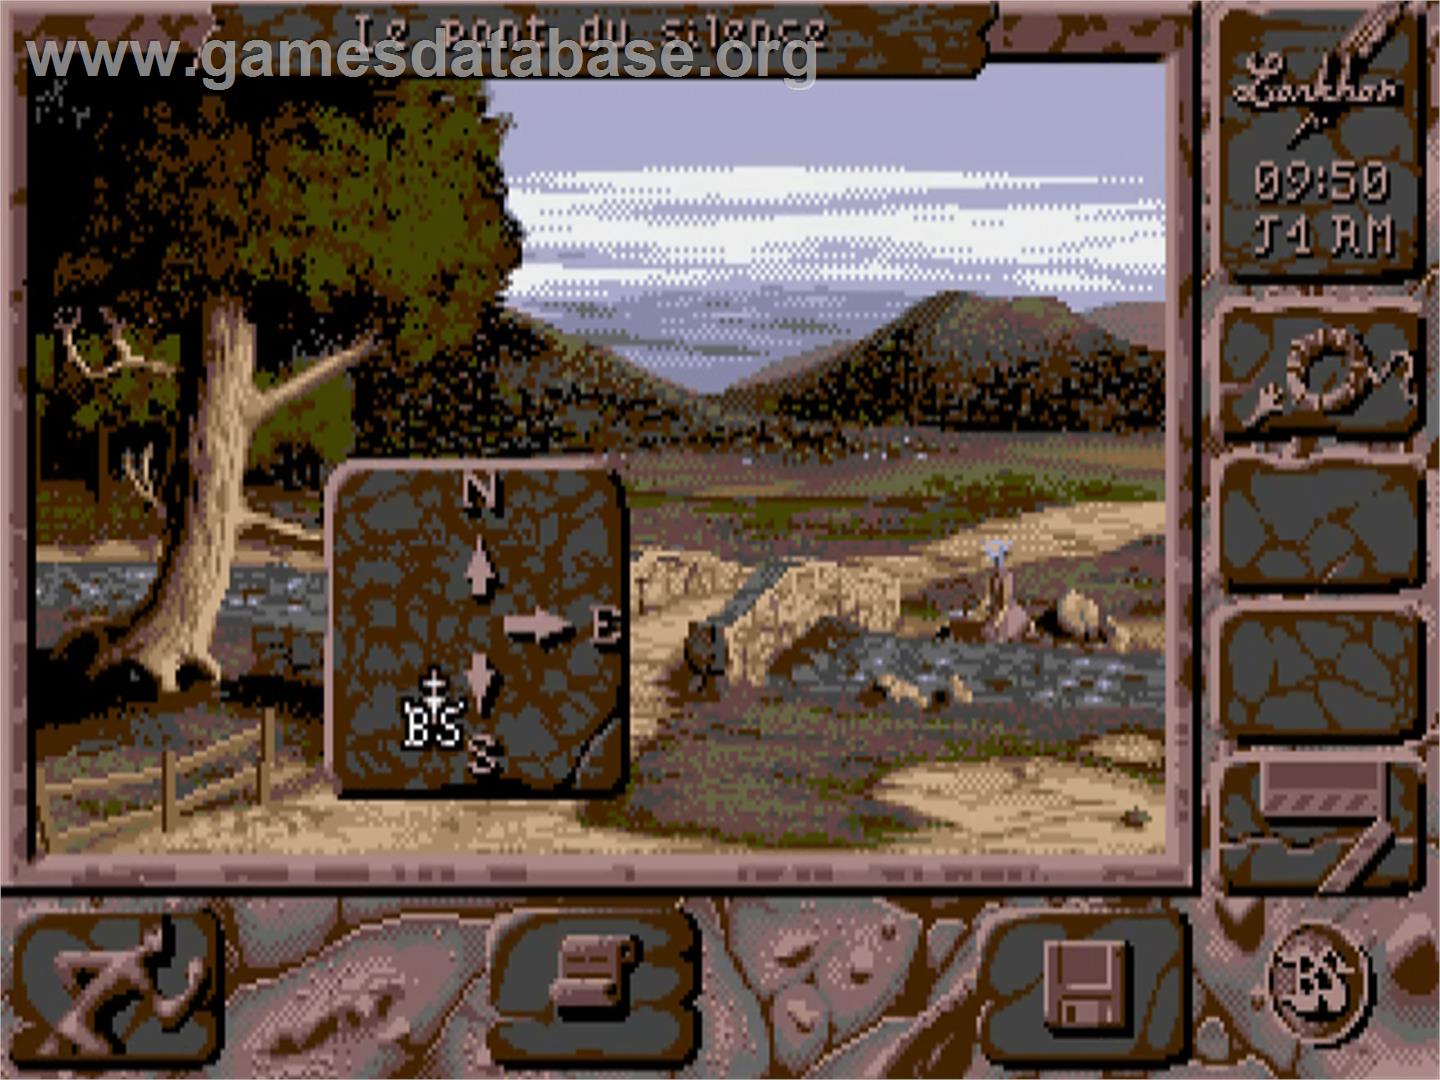 Black Sect - Commodore Amiga - Artwork - In Game